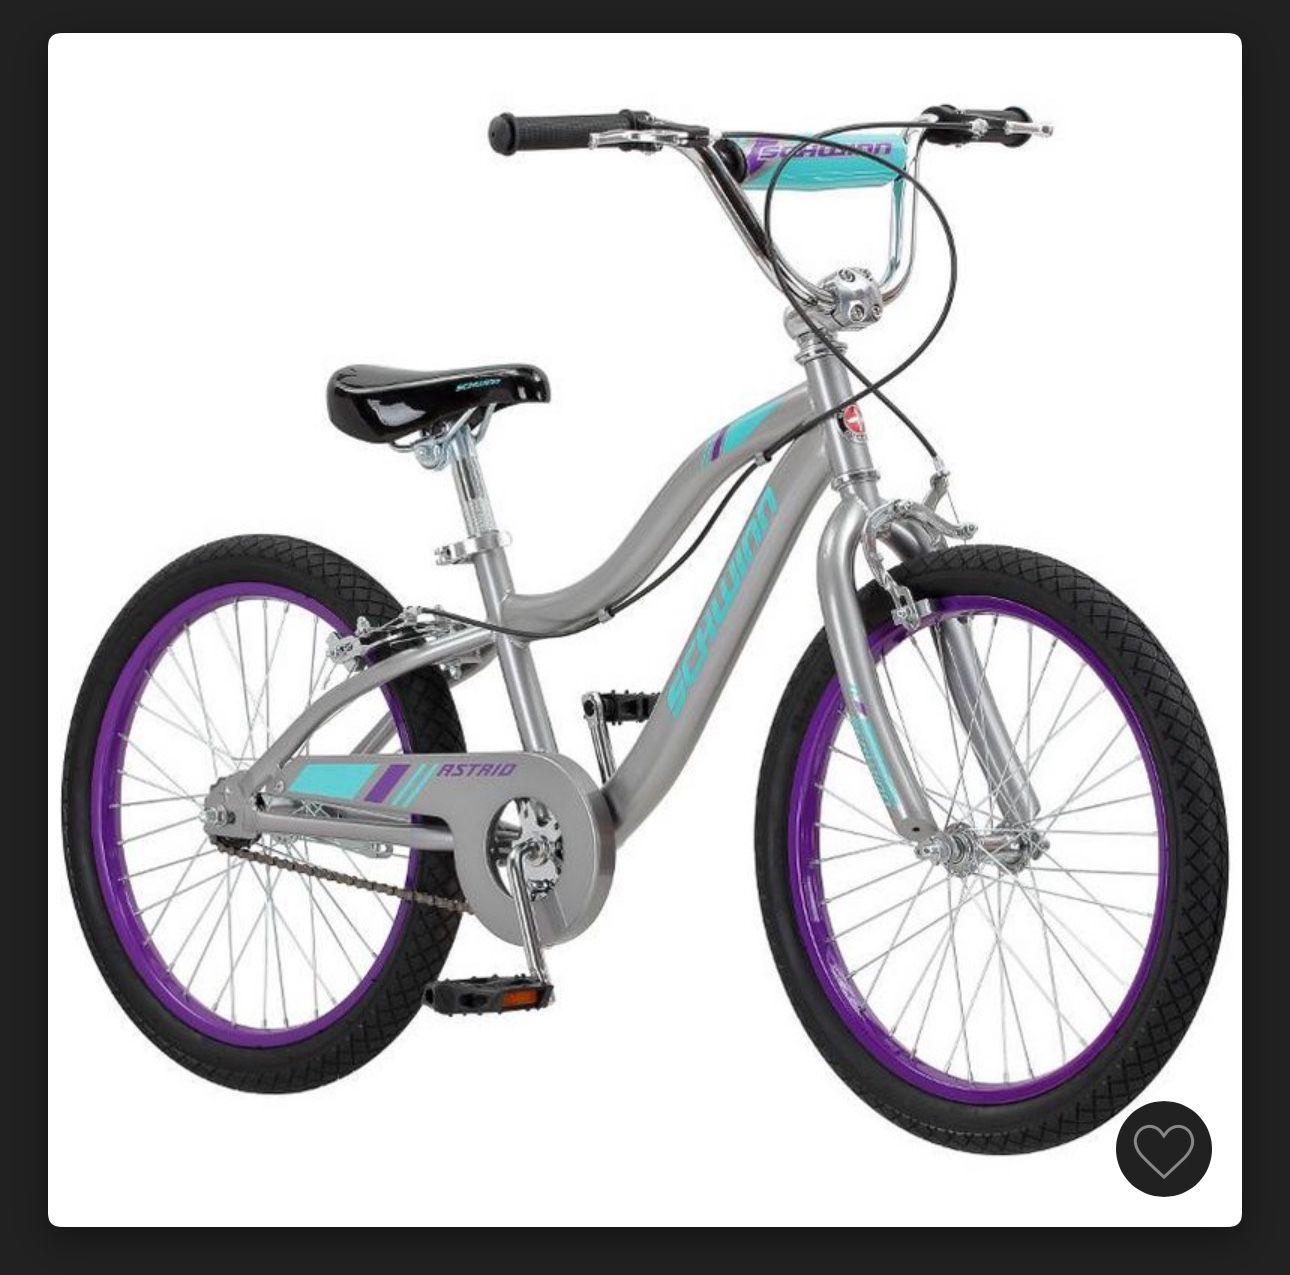 Schwinn Astrid 20” Kids Bike, Great Shape  ($40)